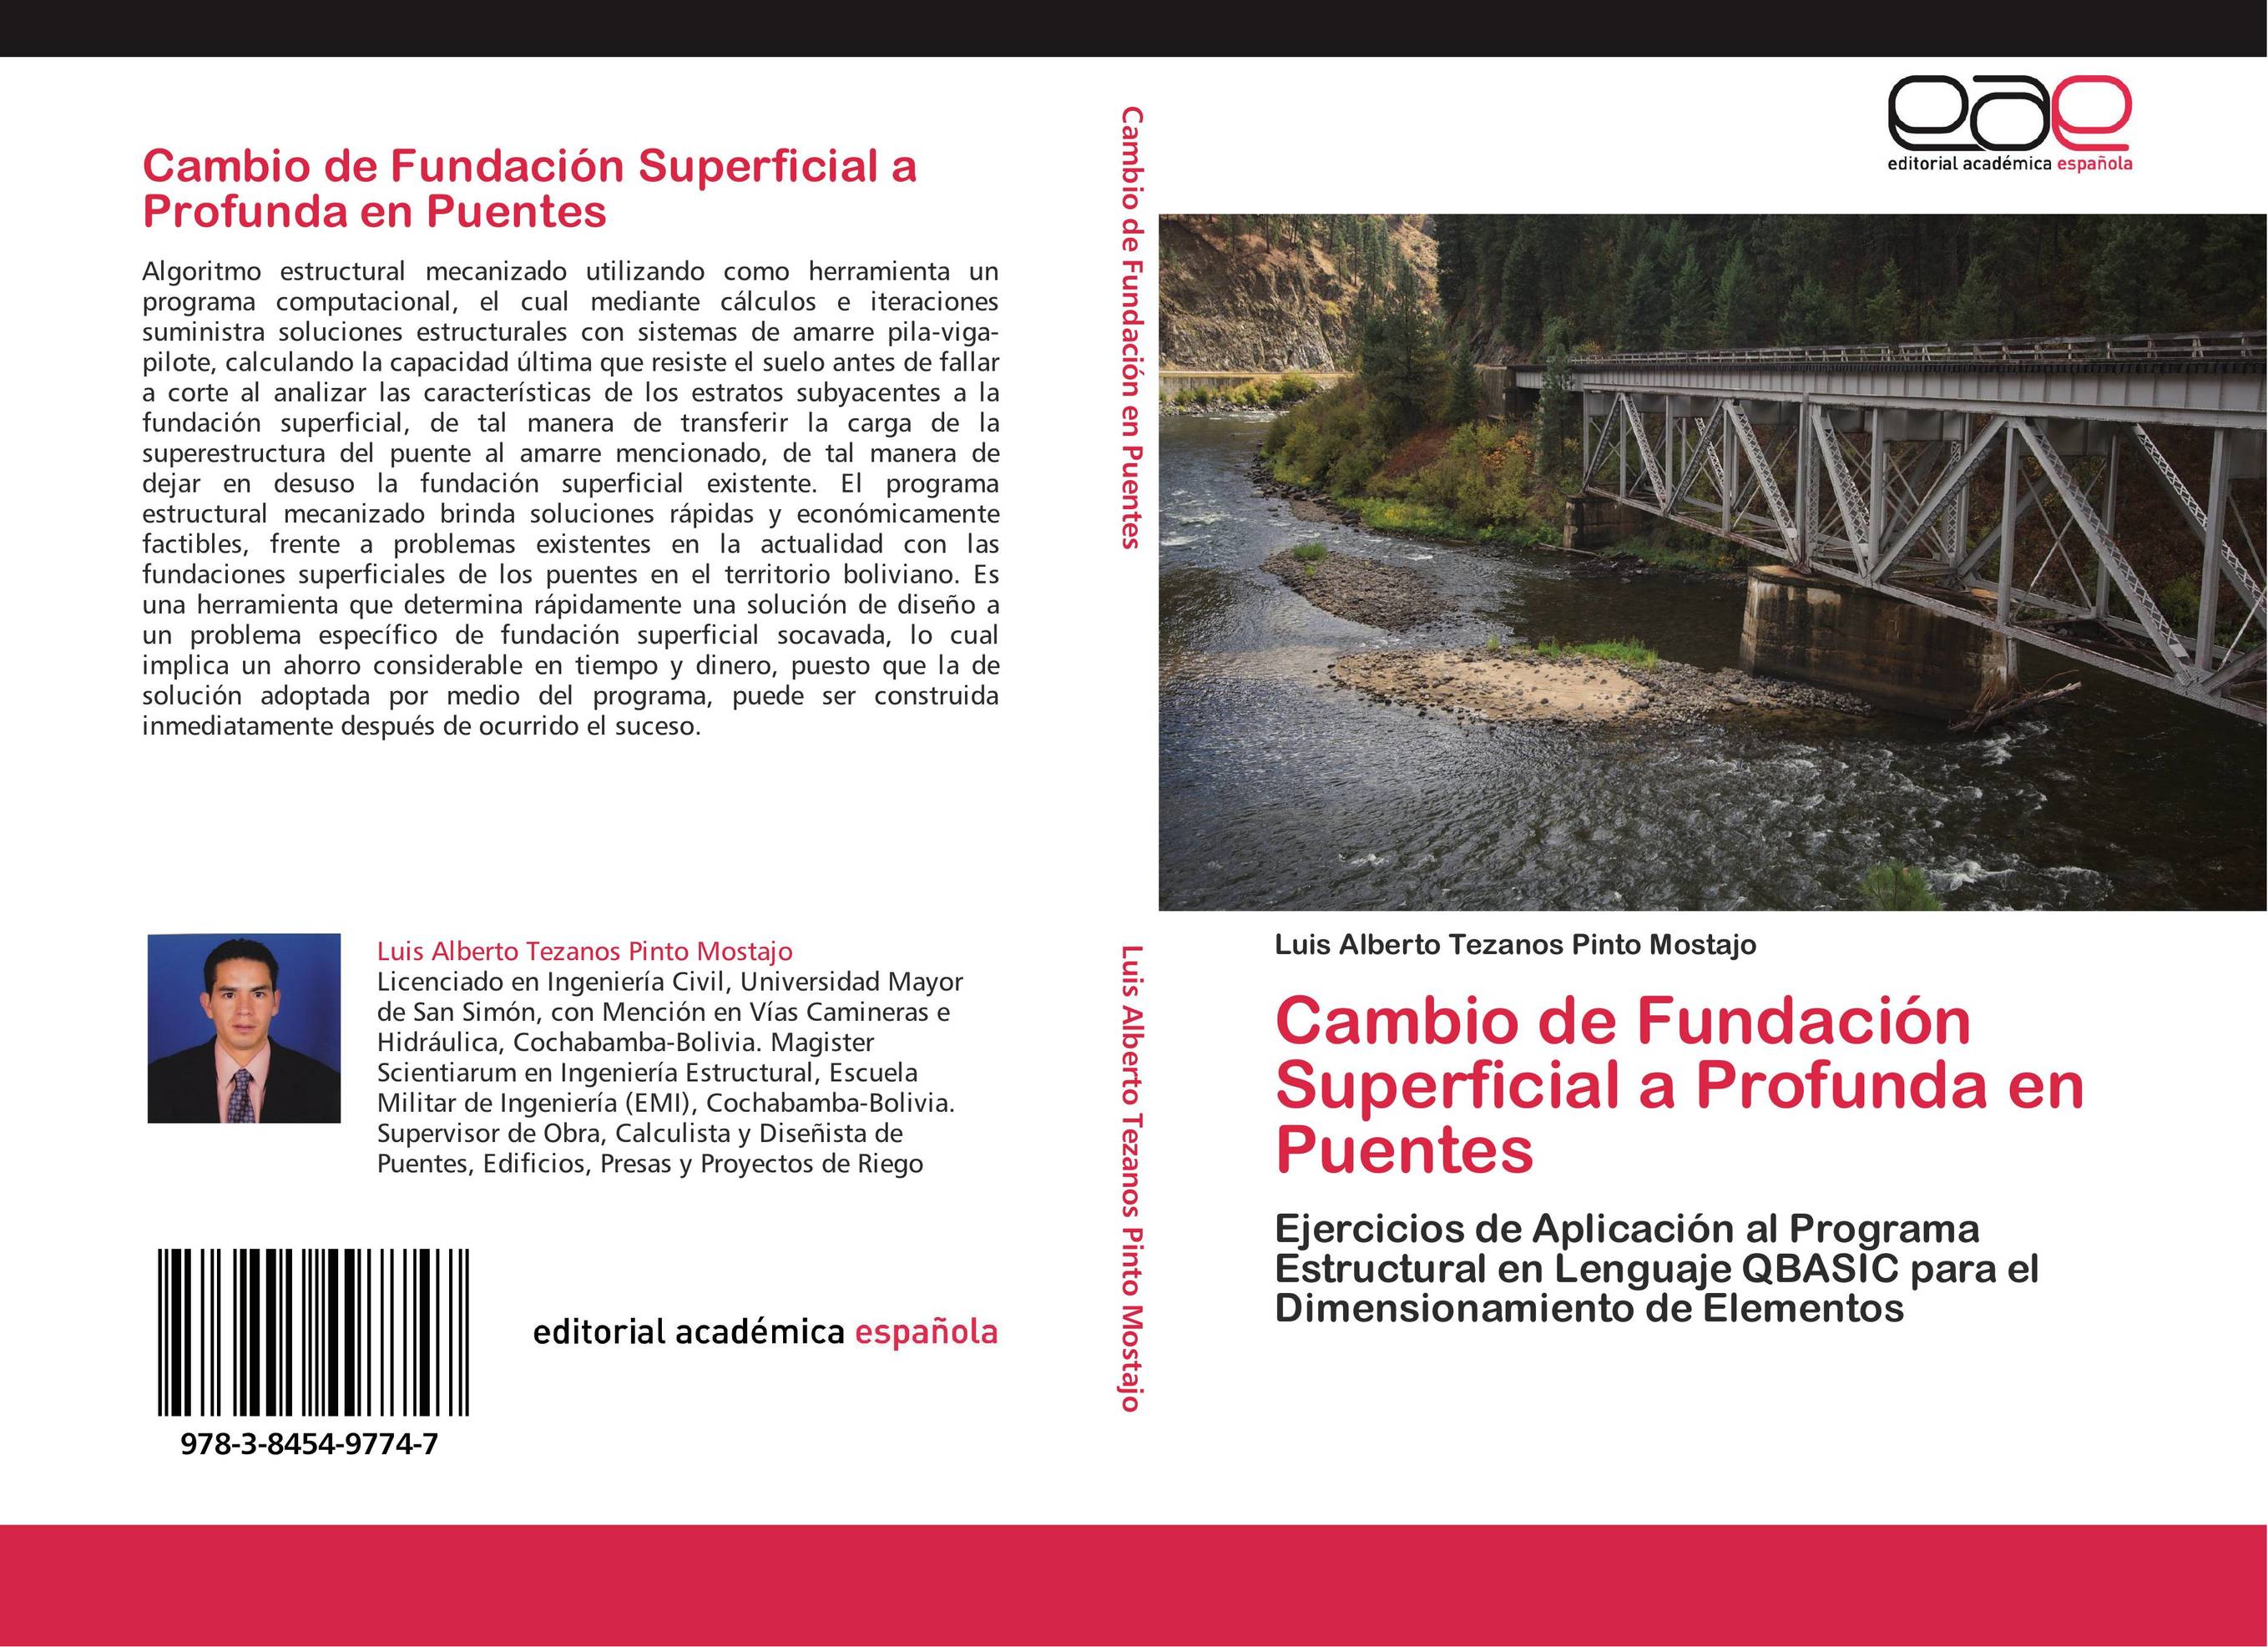 Cambio de Fundación Superficial a Profunda en Puentes